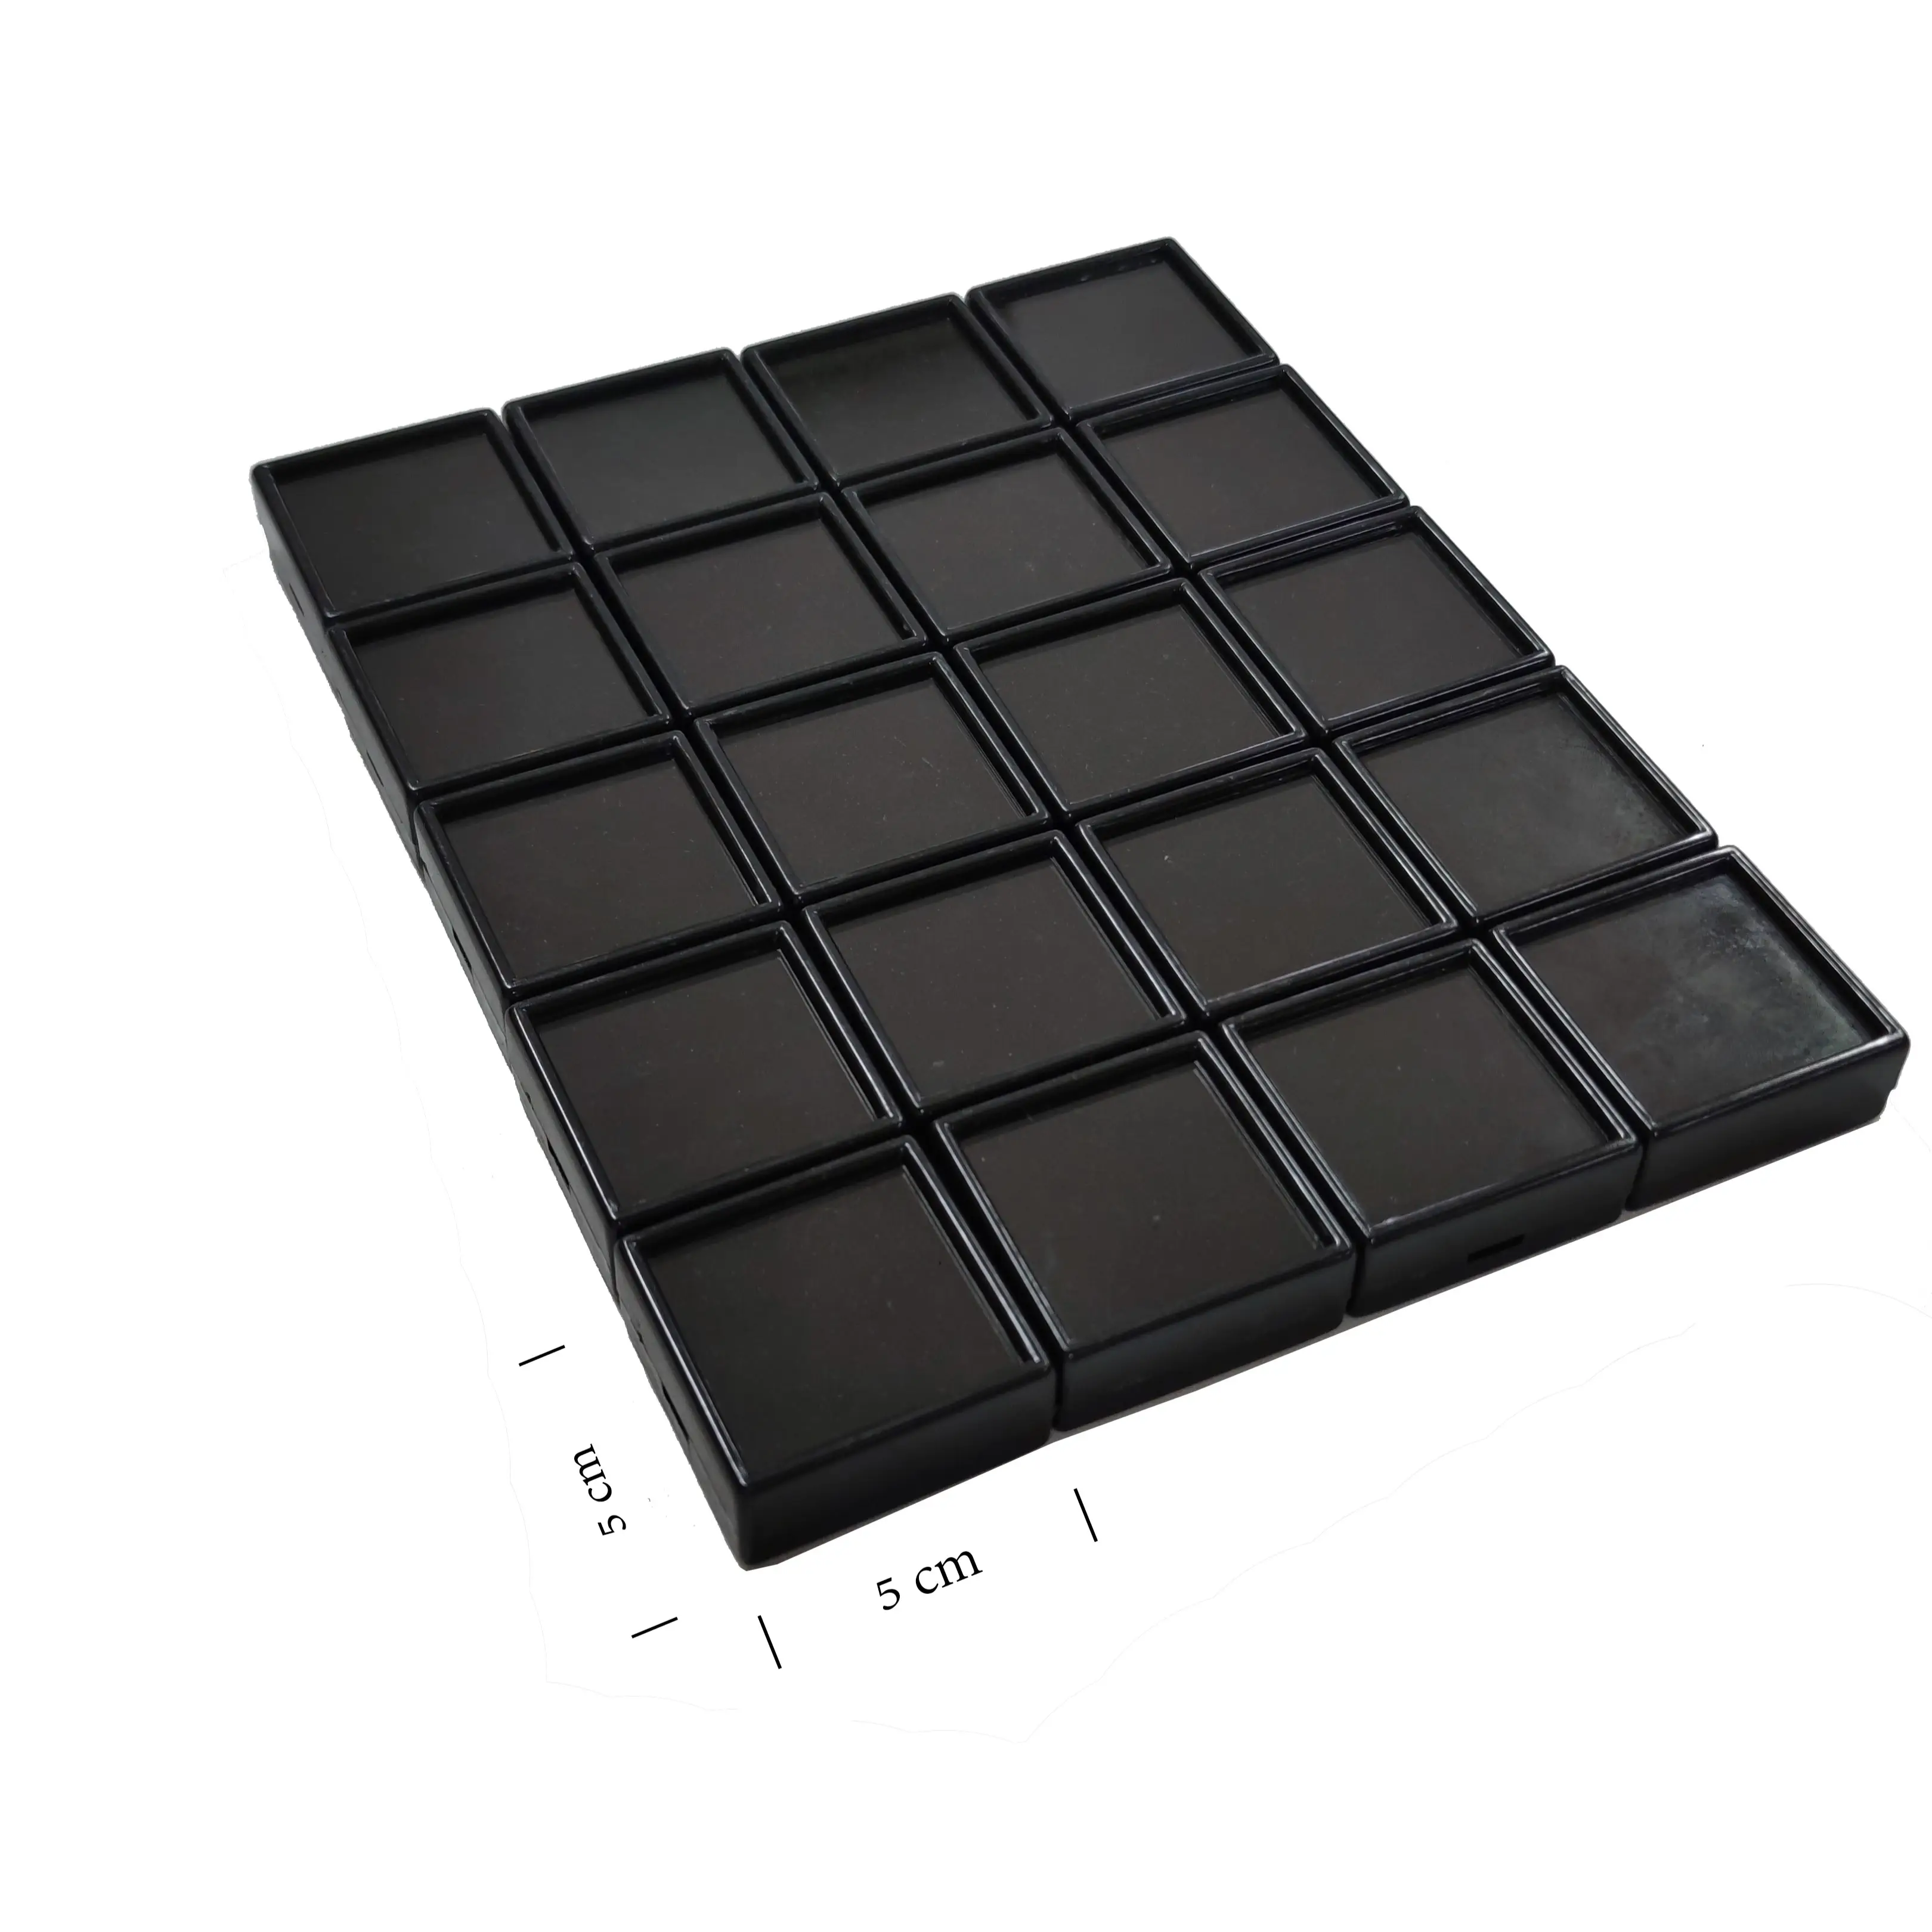 Caja de piedras preciosas de plástico, con tapa de vidrio, tamaño 5x5 cm, terciopelo negro, inserto de esponja